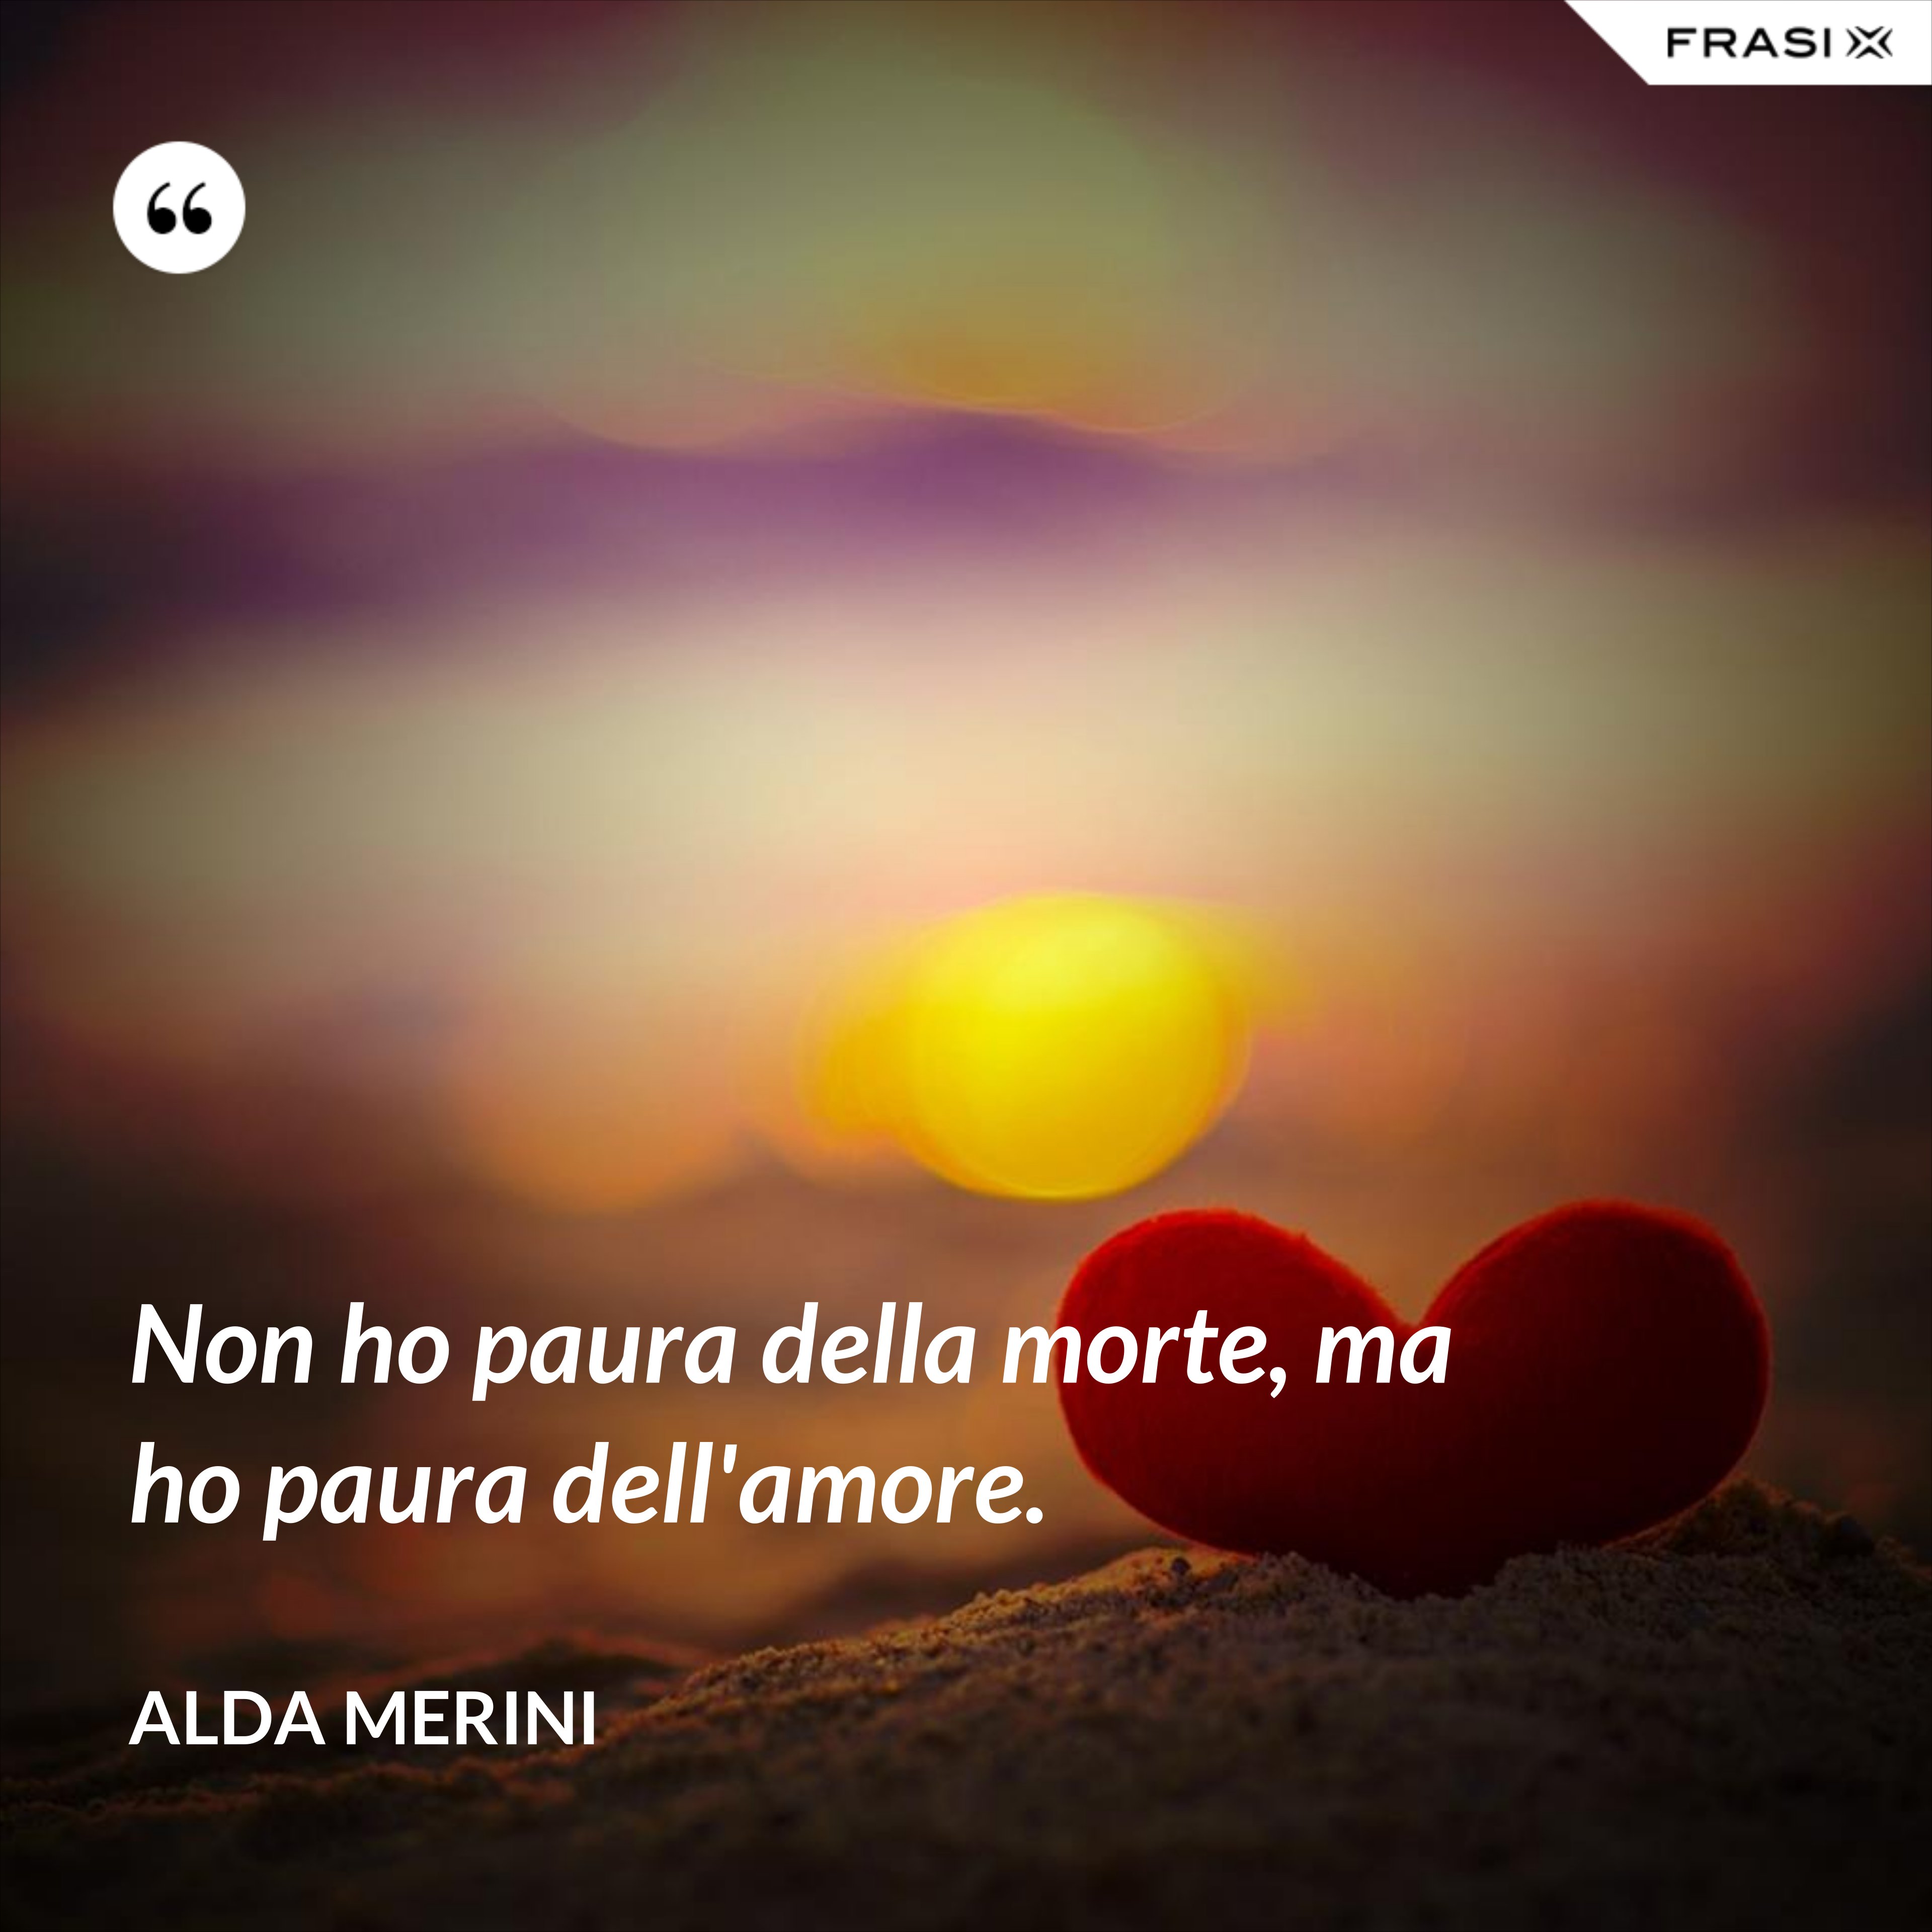 Non ho paura della morte, ma ho paura dell'amore. - Alda Merini